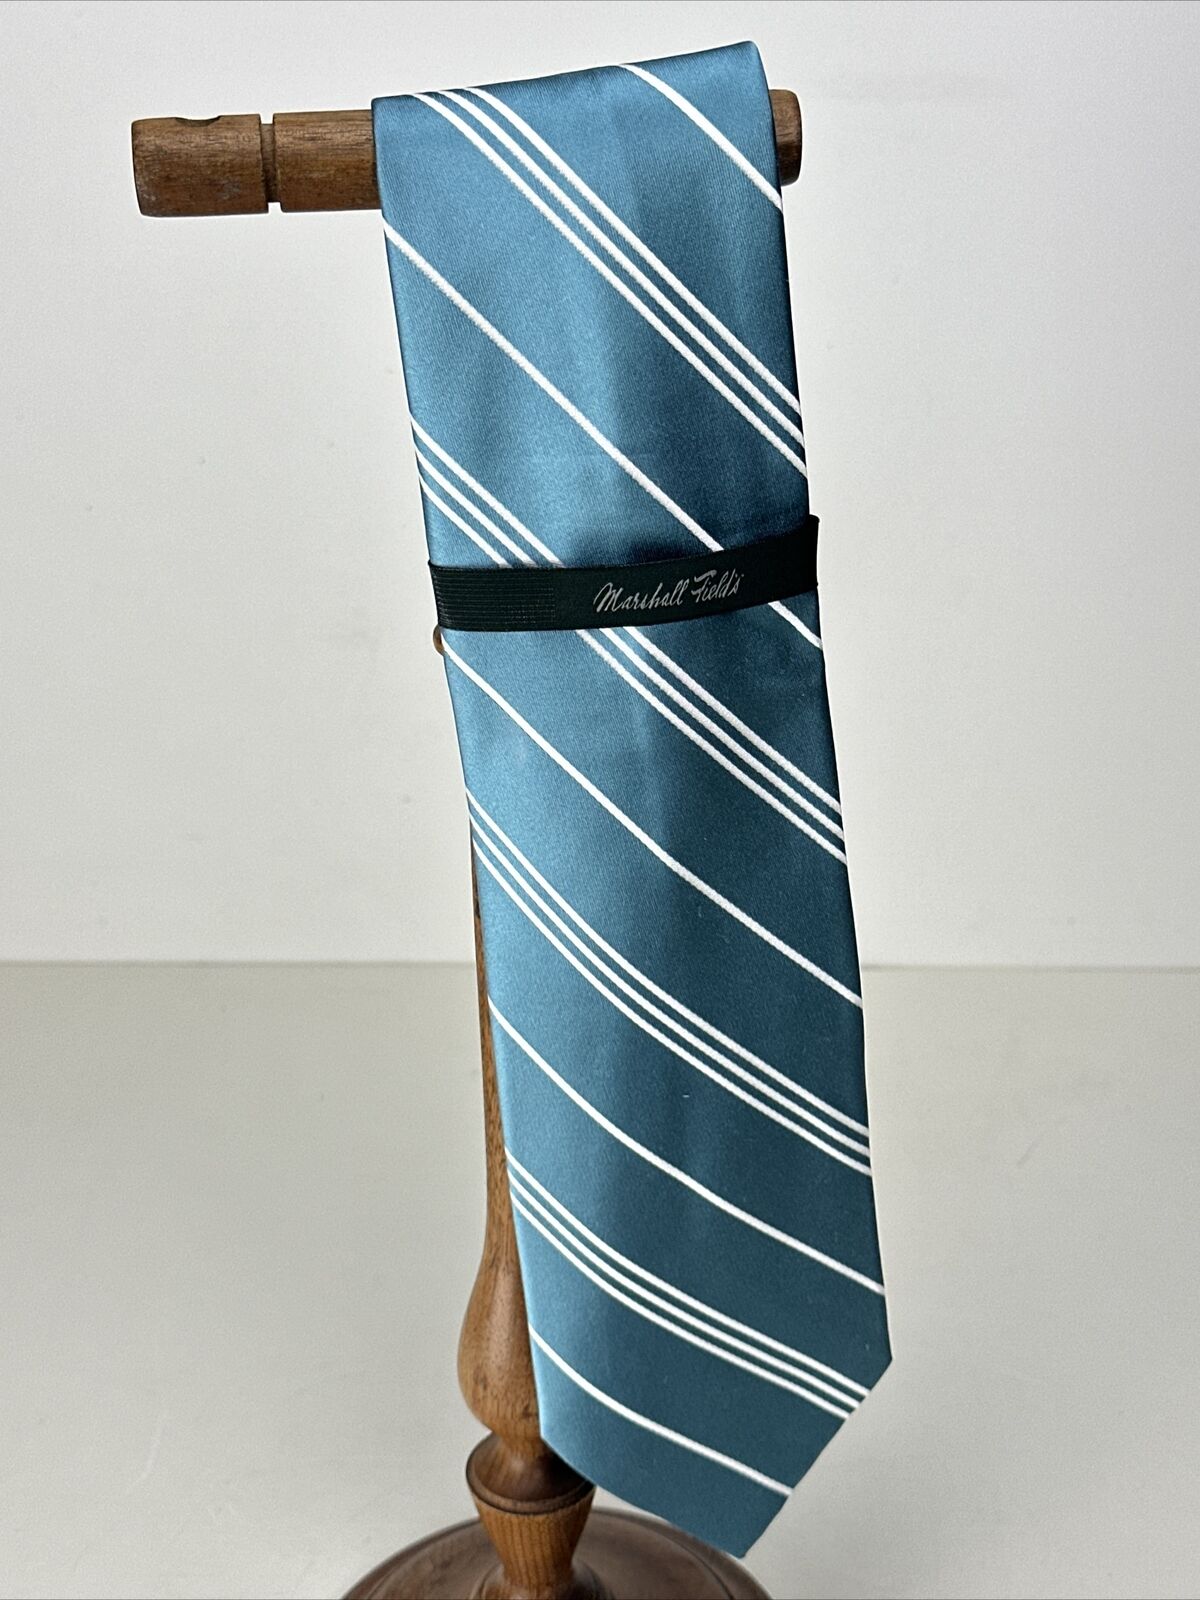 Marshall Fields Silk Necktie Tie 4 Inch Teal Stri… - image 1